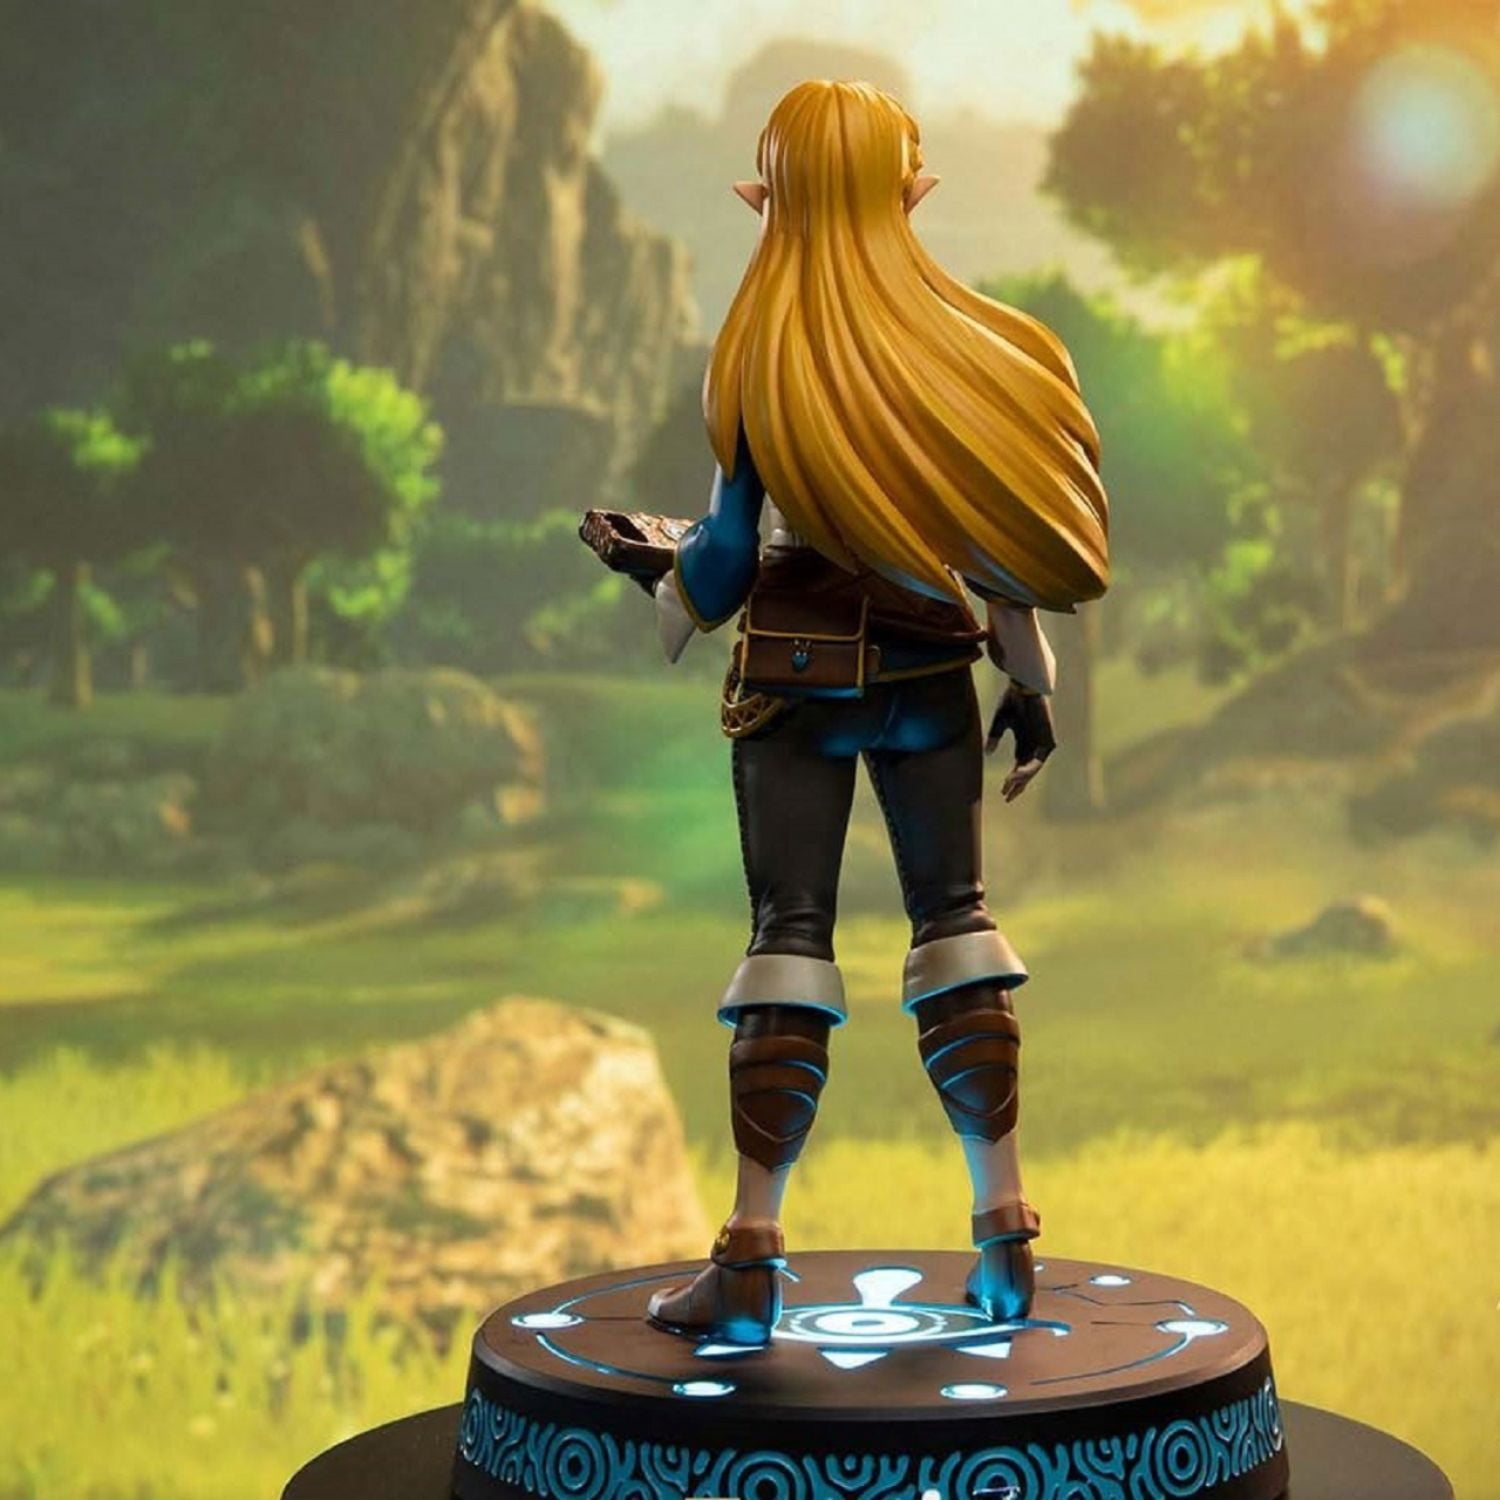 Zelda #4 Photo Print The Legend of Zelda Game Art Figure Statue Figurine PS4 